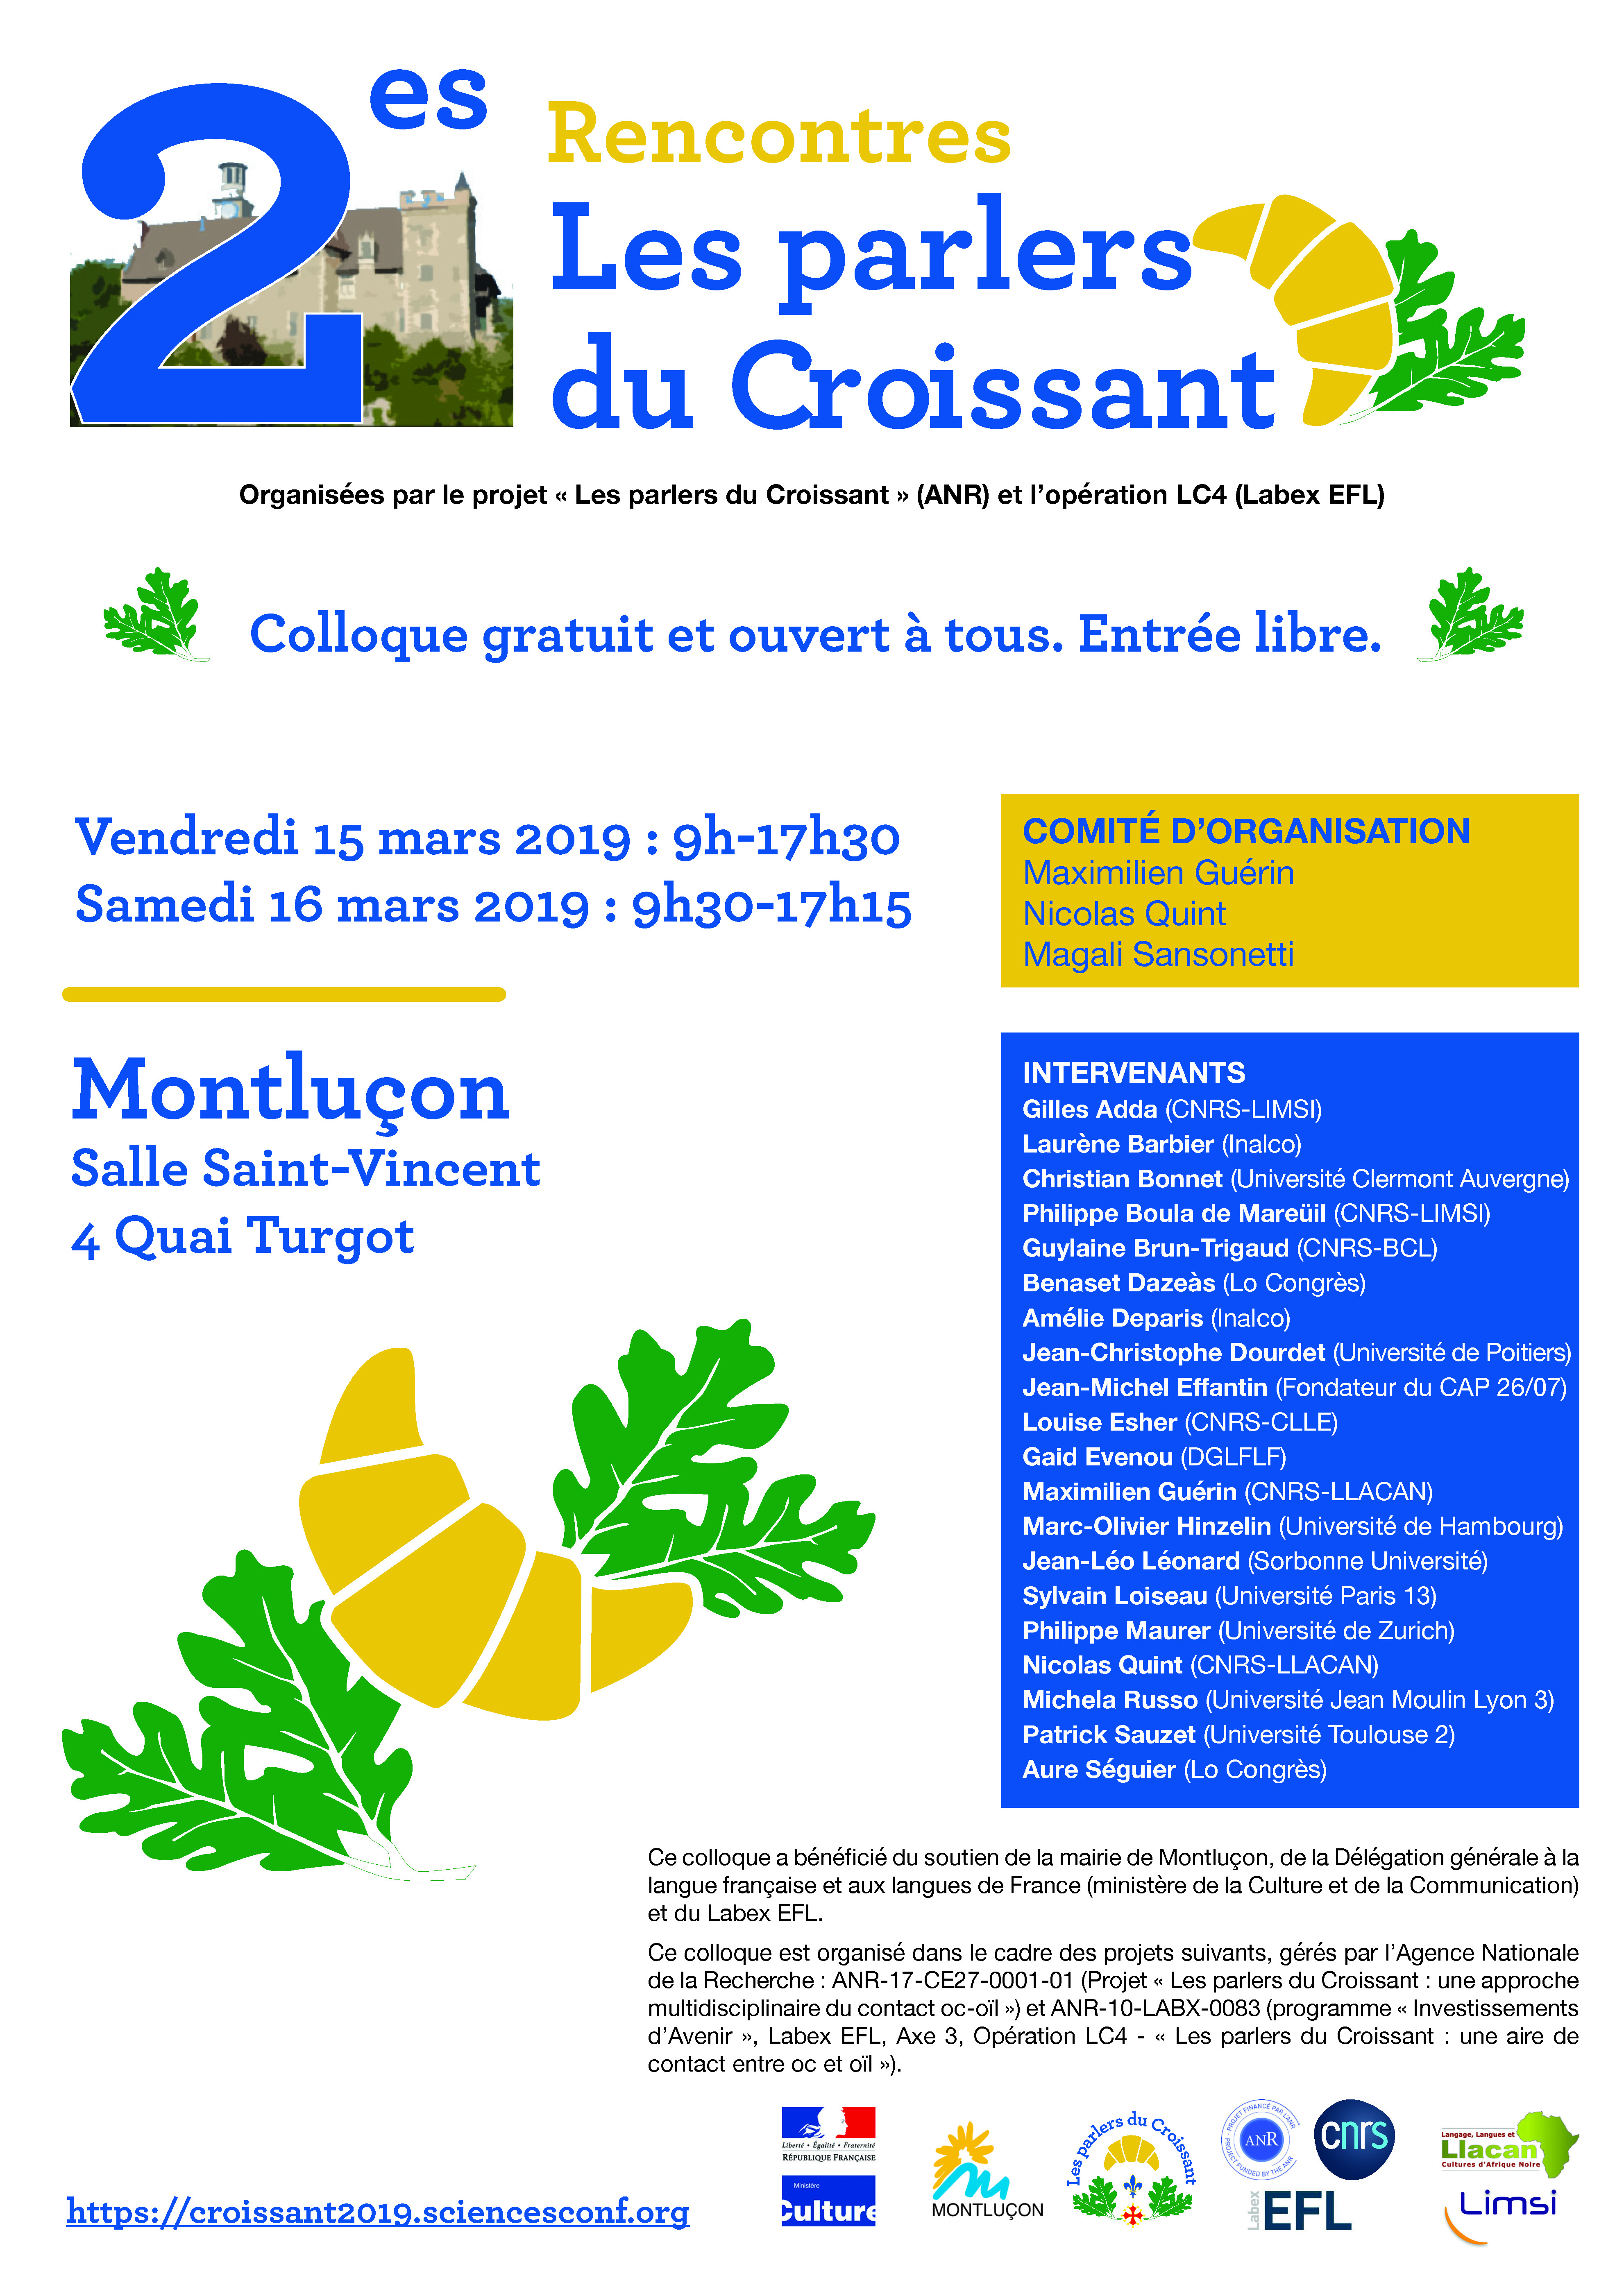 COLLOQUE "LES PARLERS DU CROISSANT" -
Christian Bonnet (Université Clermont Auvergne / IHRIM)
Que ‘dit’ la littérature en énonçant la langue minorisée ?